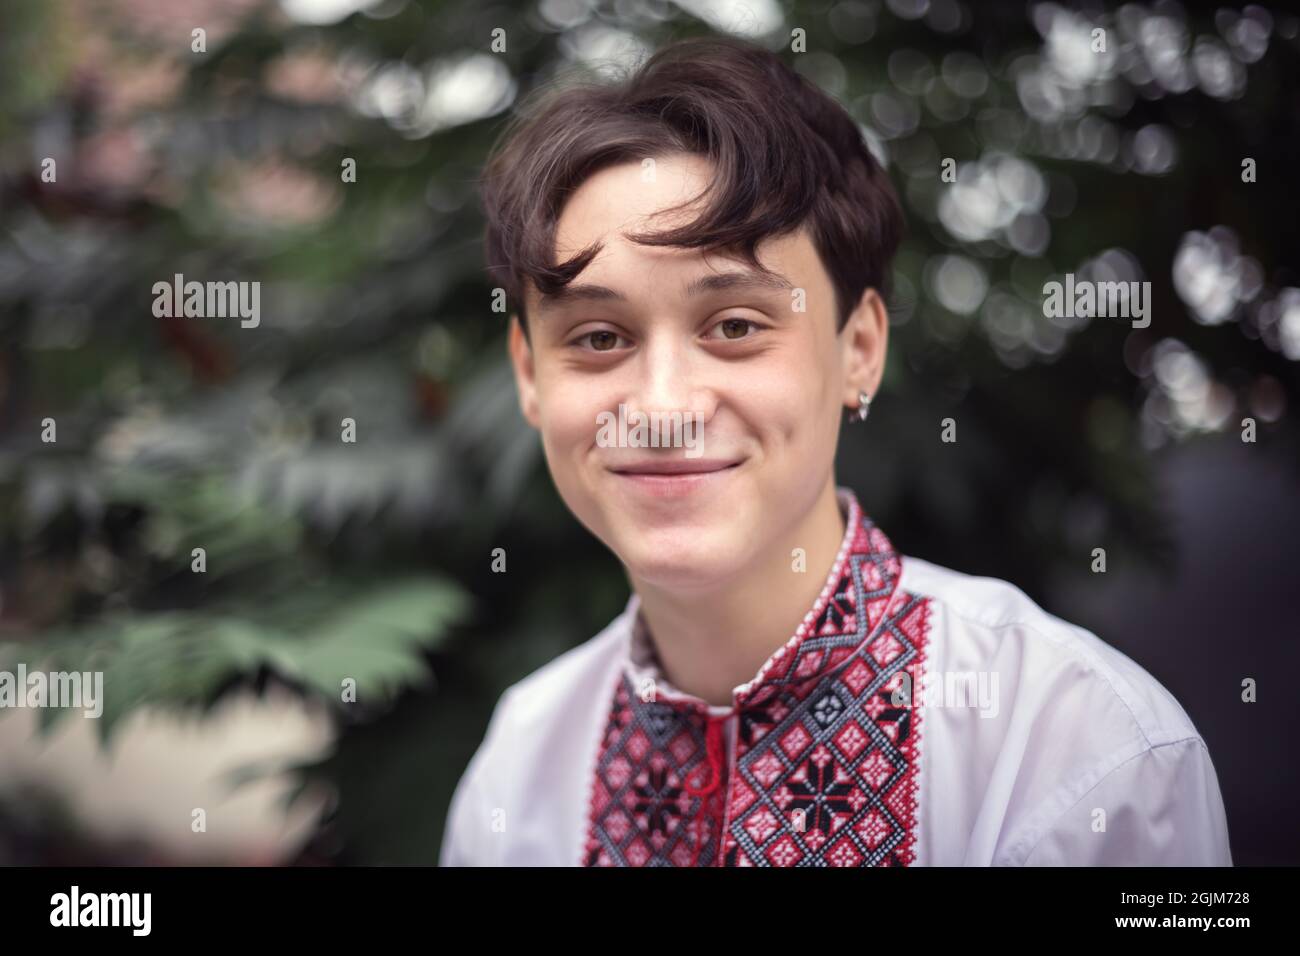 Portrait d'un jeune garçon souriant dans une chemise ukrainienne traditionnelle (chemise brodée). Ukraine Banque D'Images